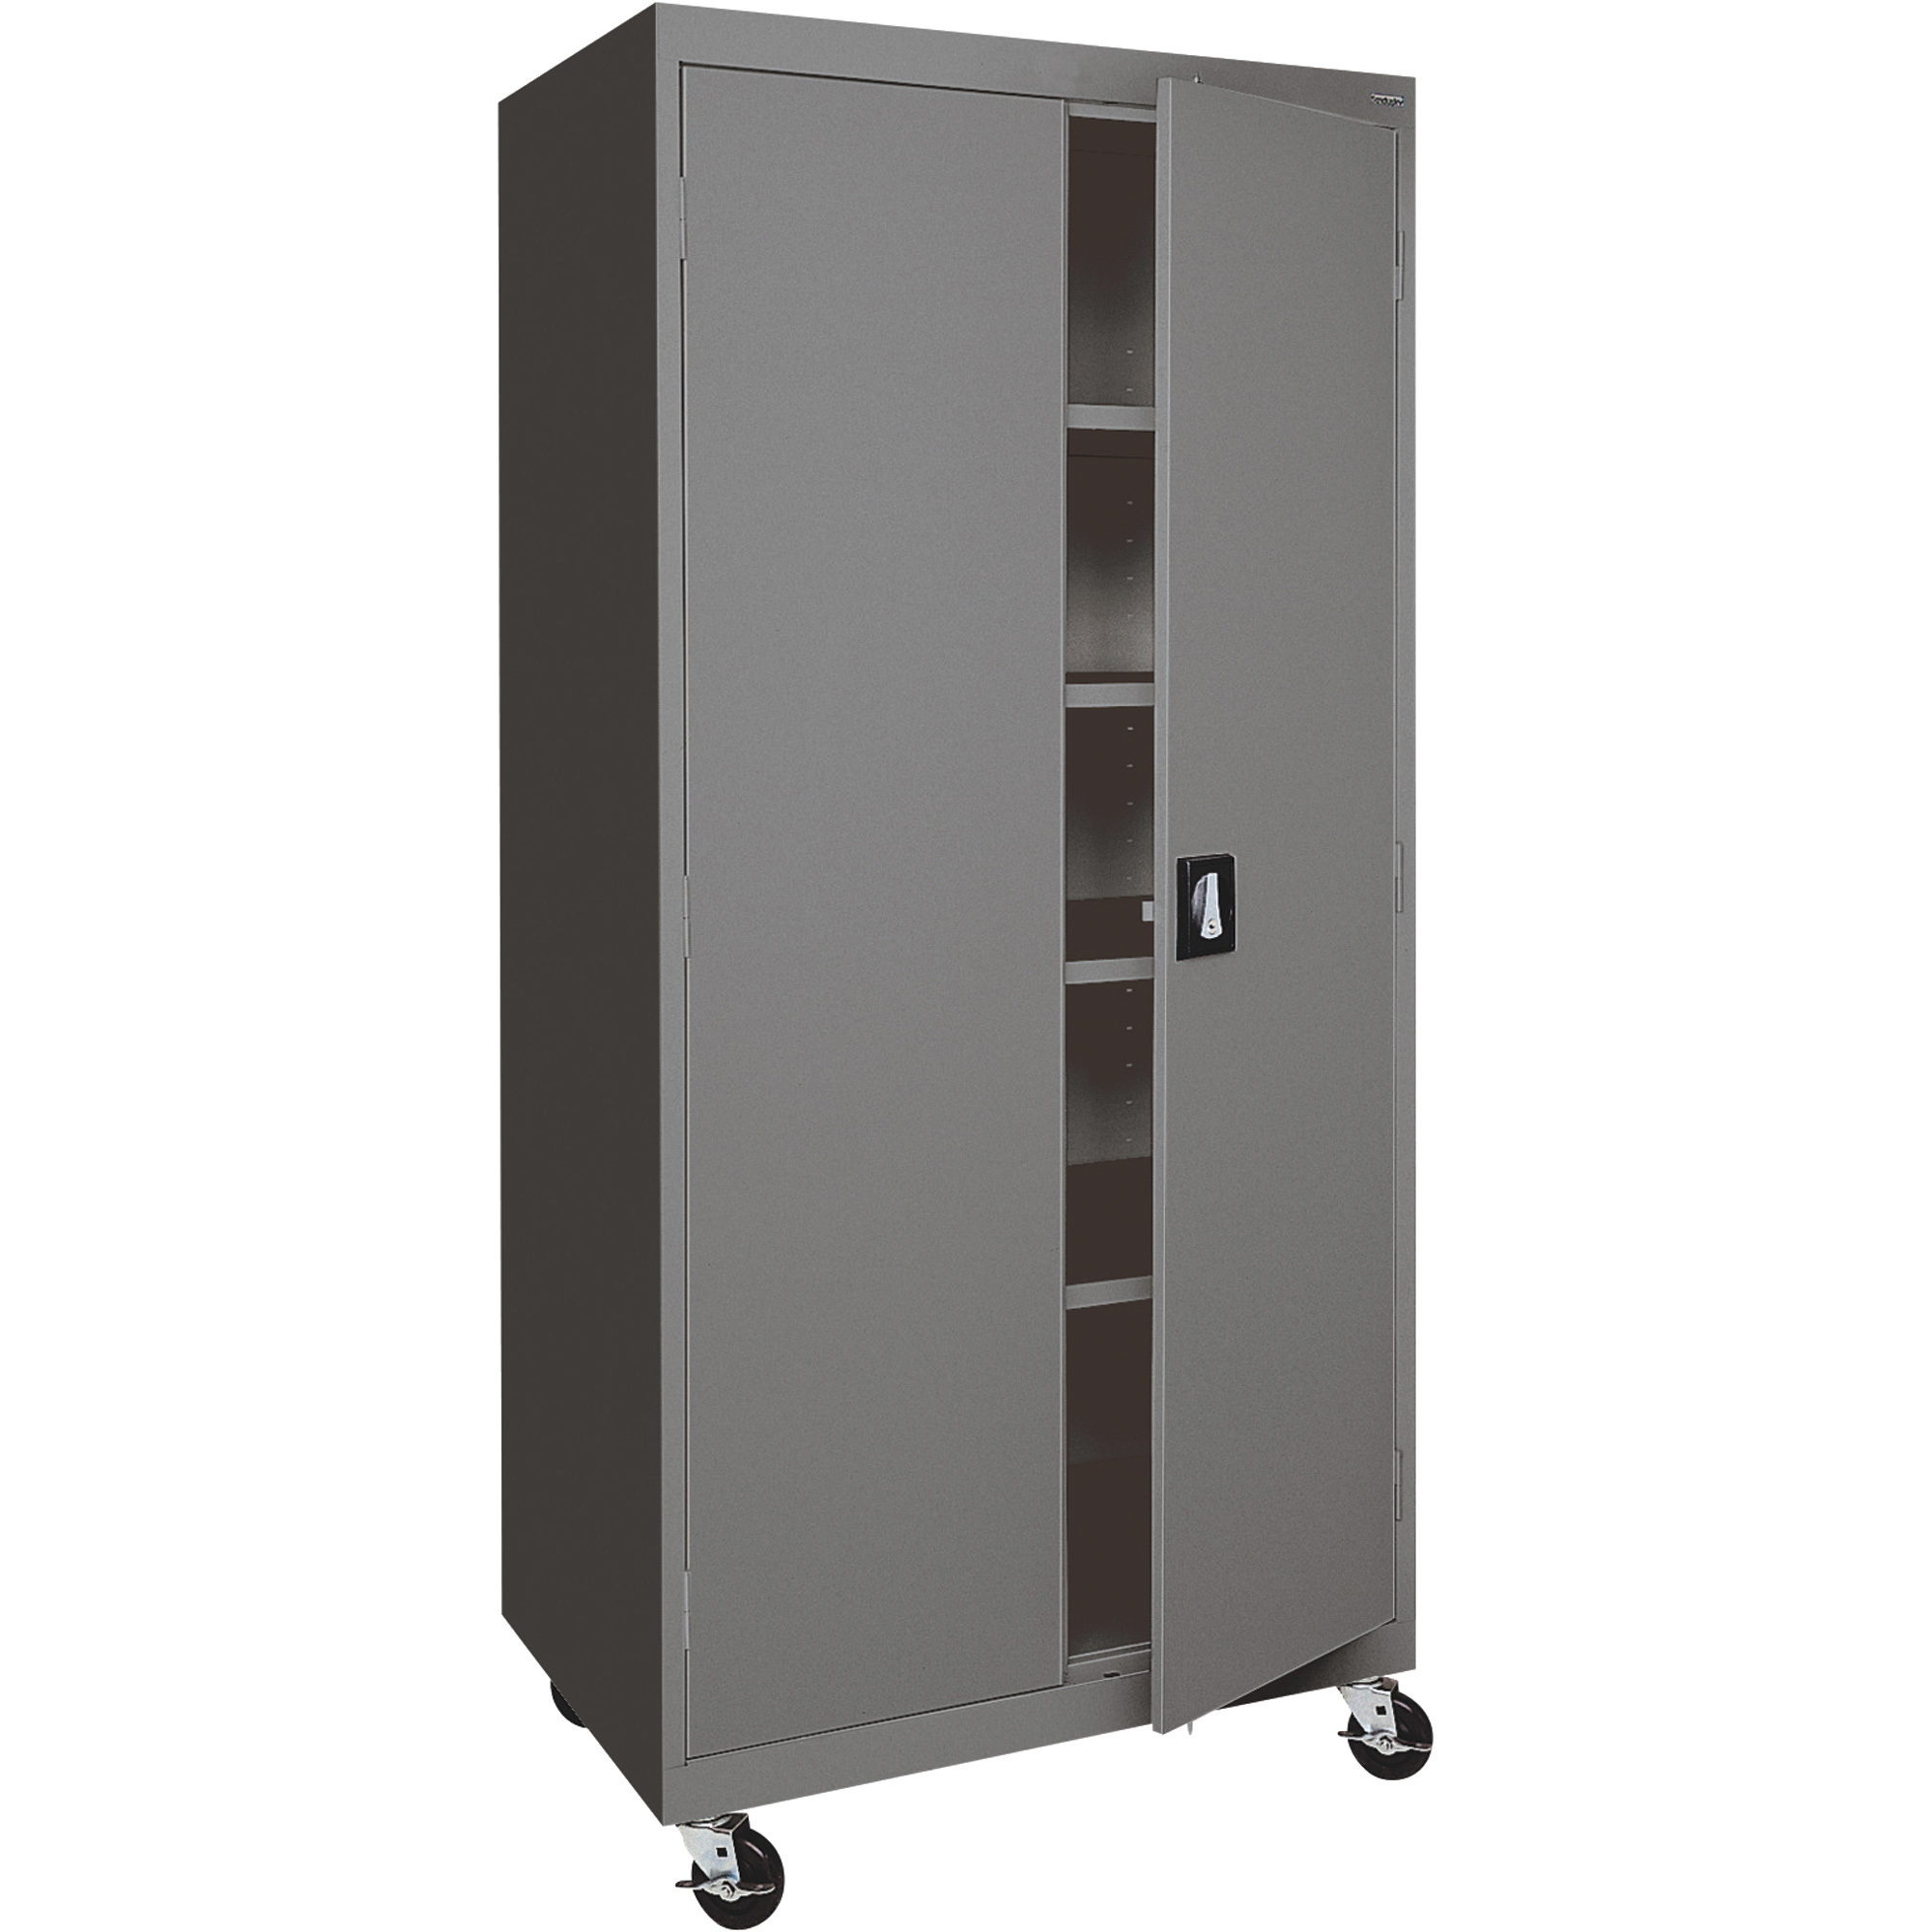 Heavy-Duty Welded Steel Mobile Cabinet — 36Inch W x 24Inch D x 78Inch H, Charcoal, Model - Sandusky Lee TA4R362472-02